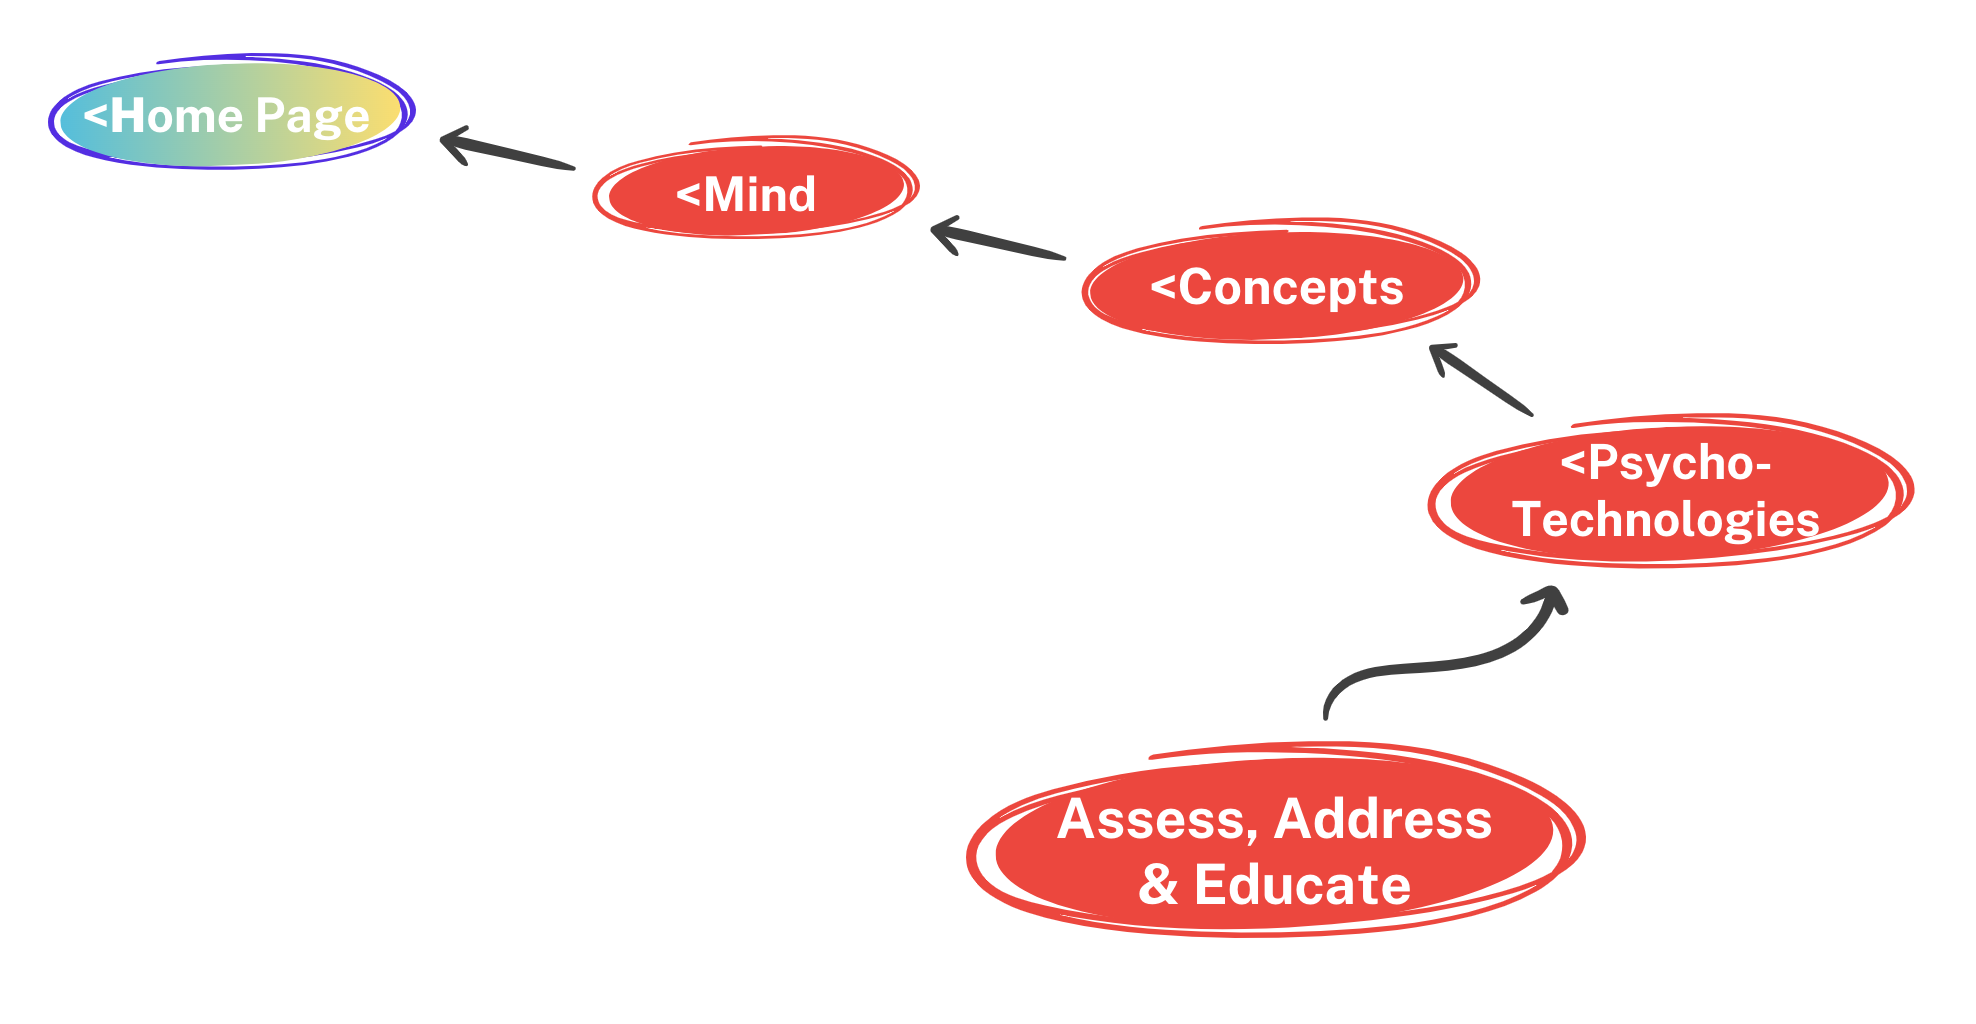 Assess, Address, & Educate